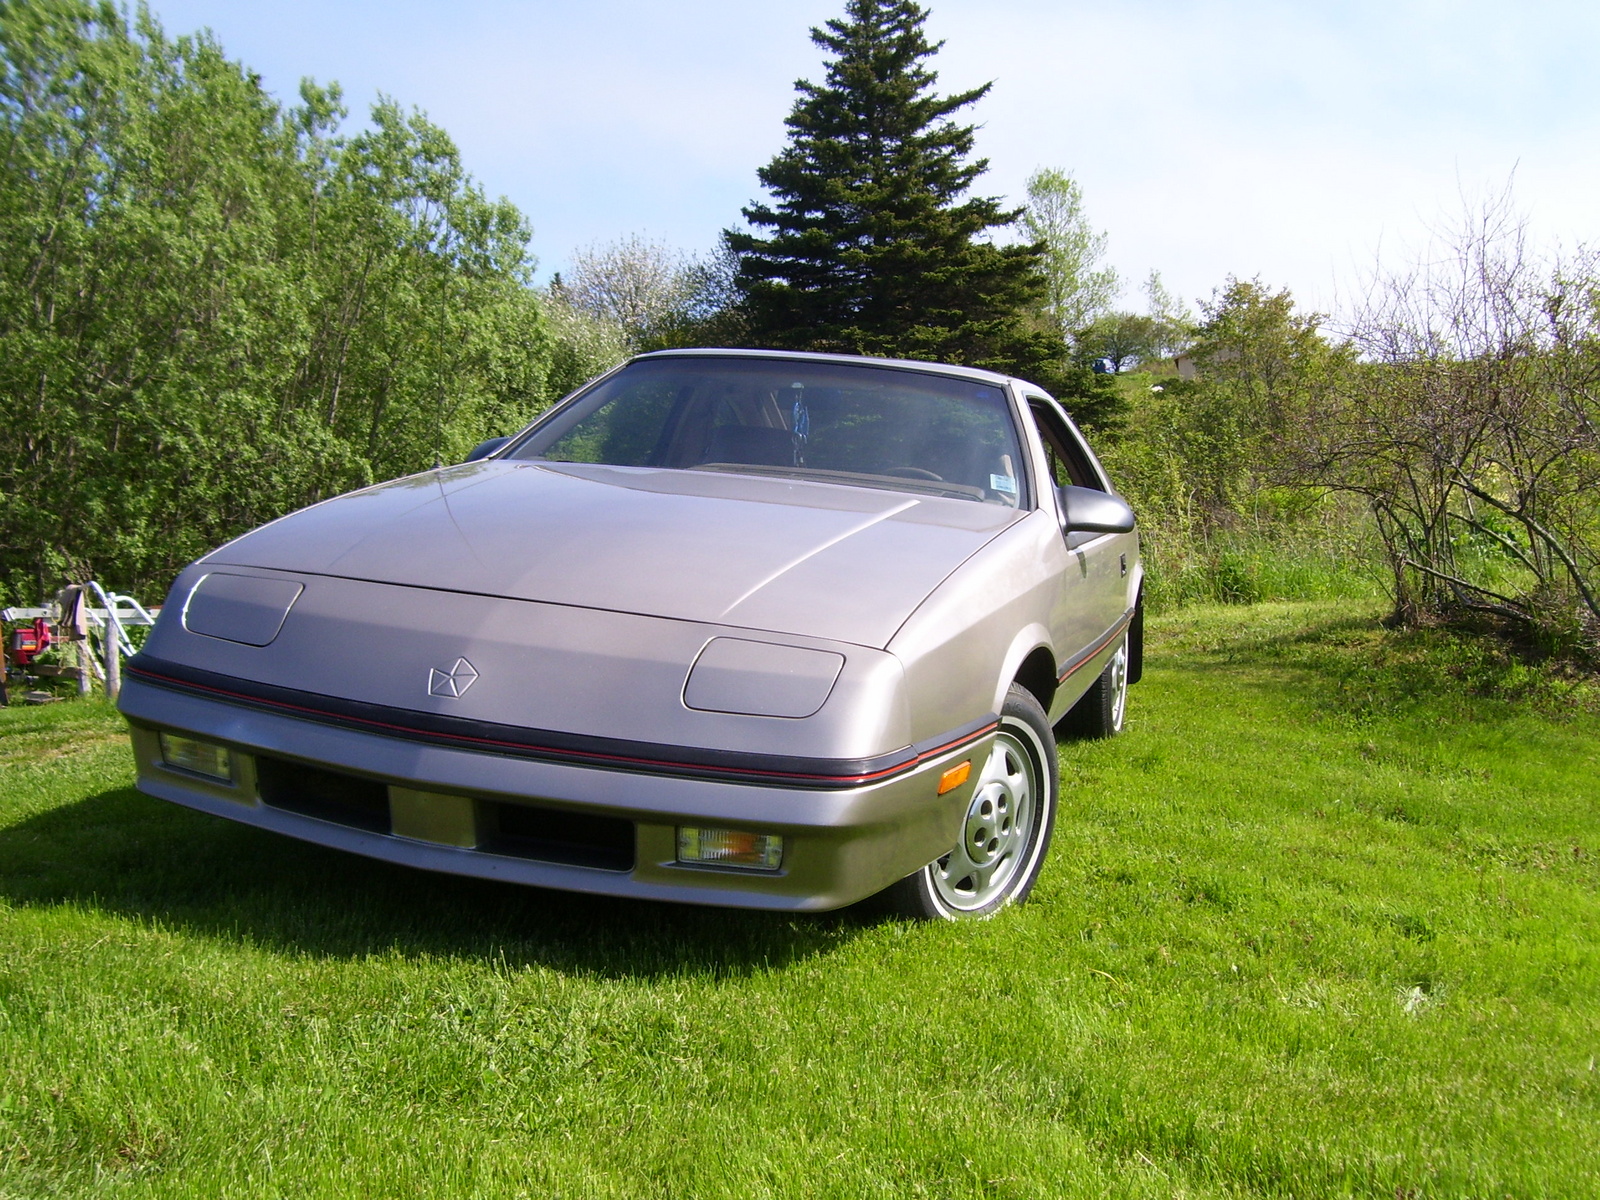 1988 Chrysler daytona #3